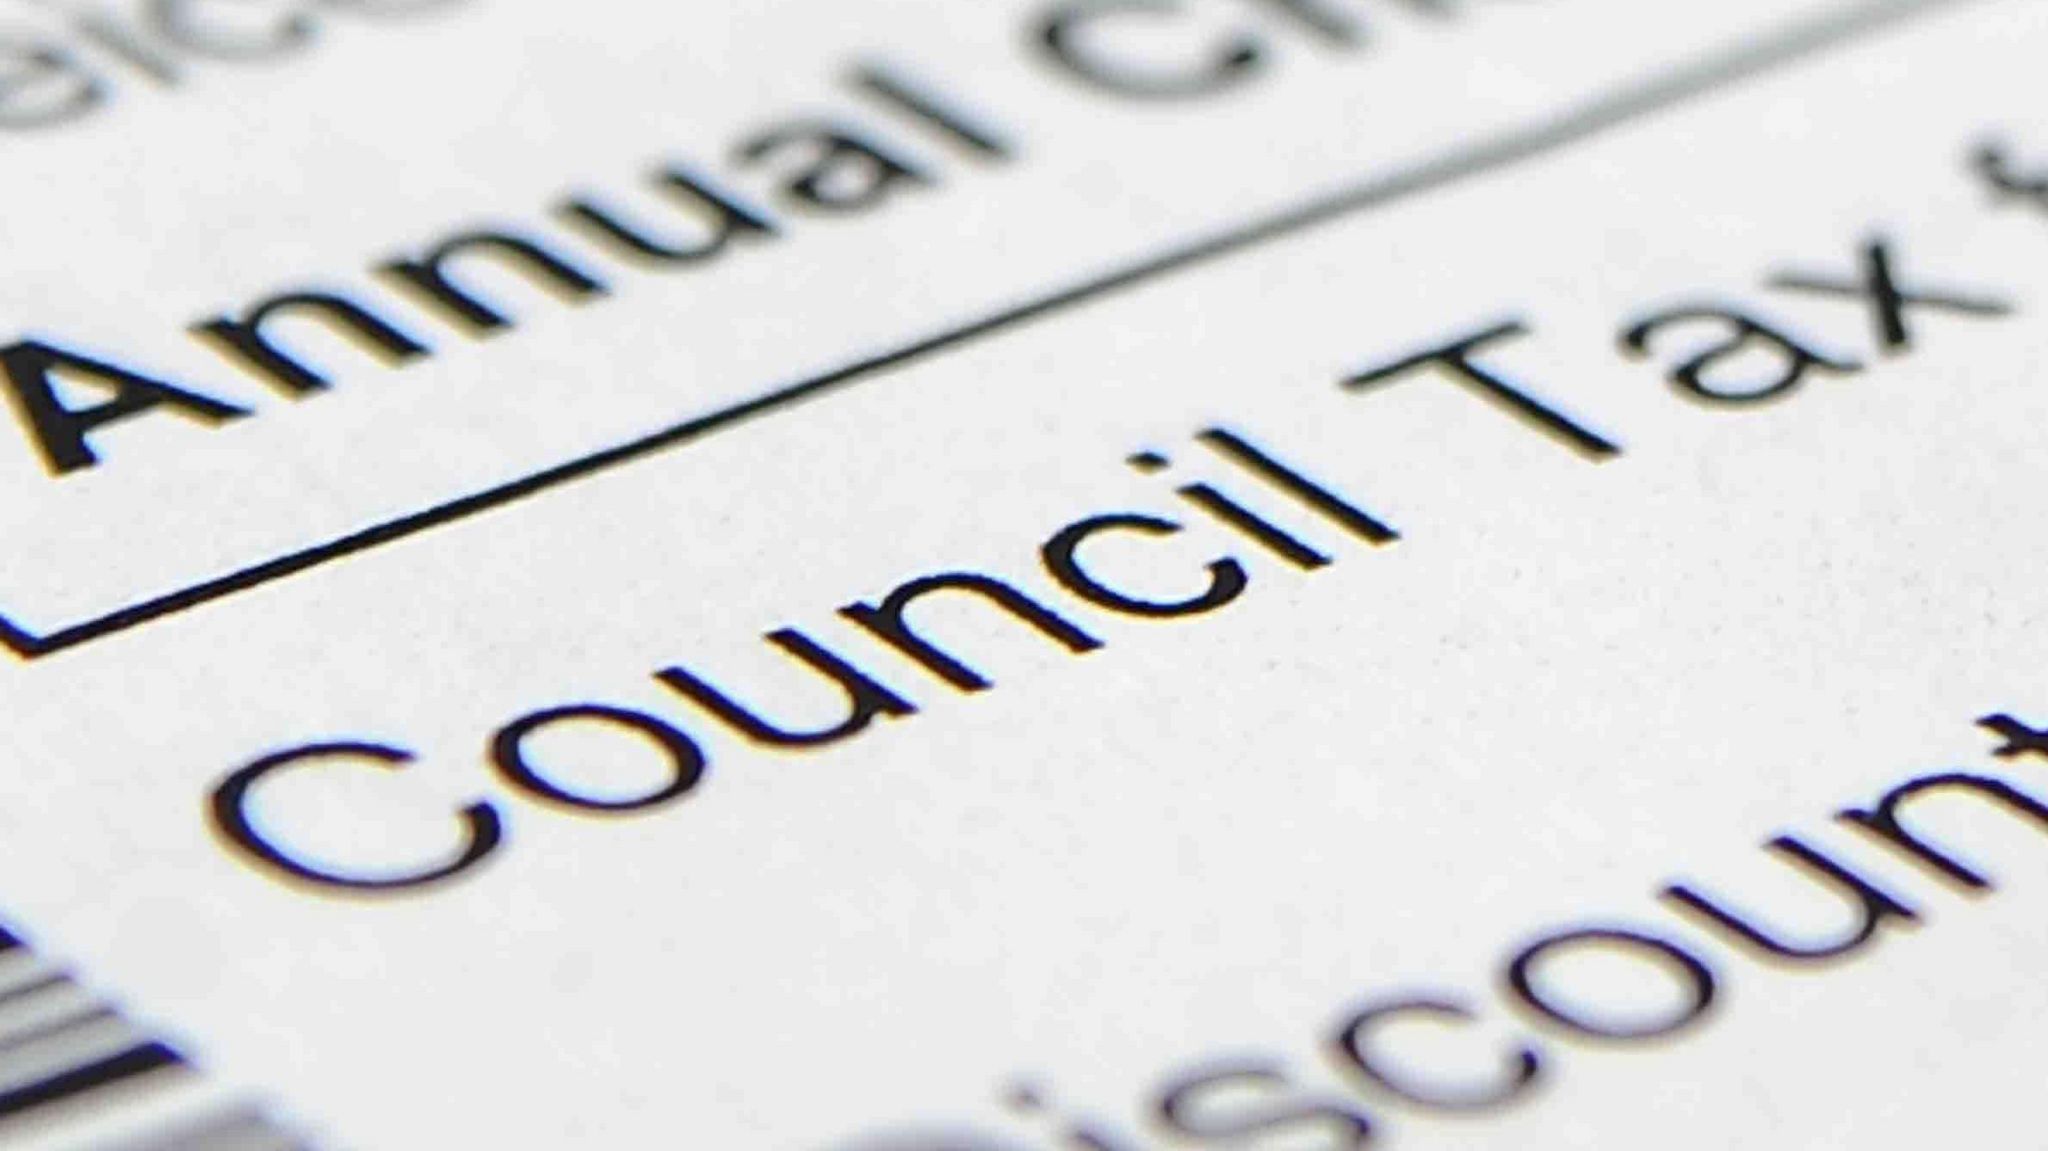 Council tax bill